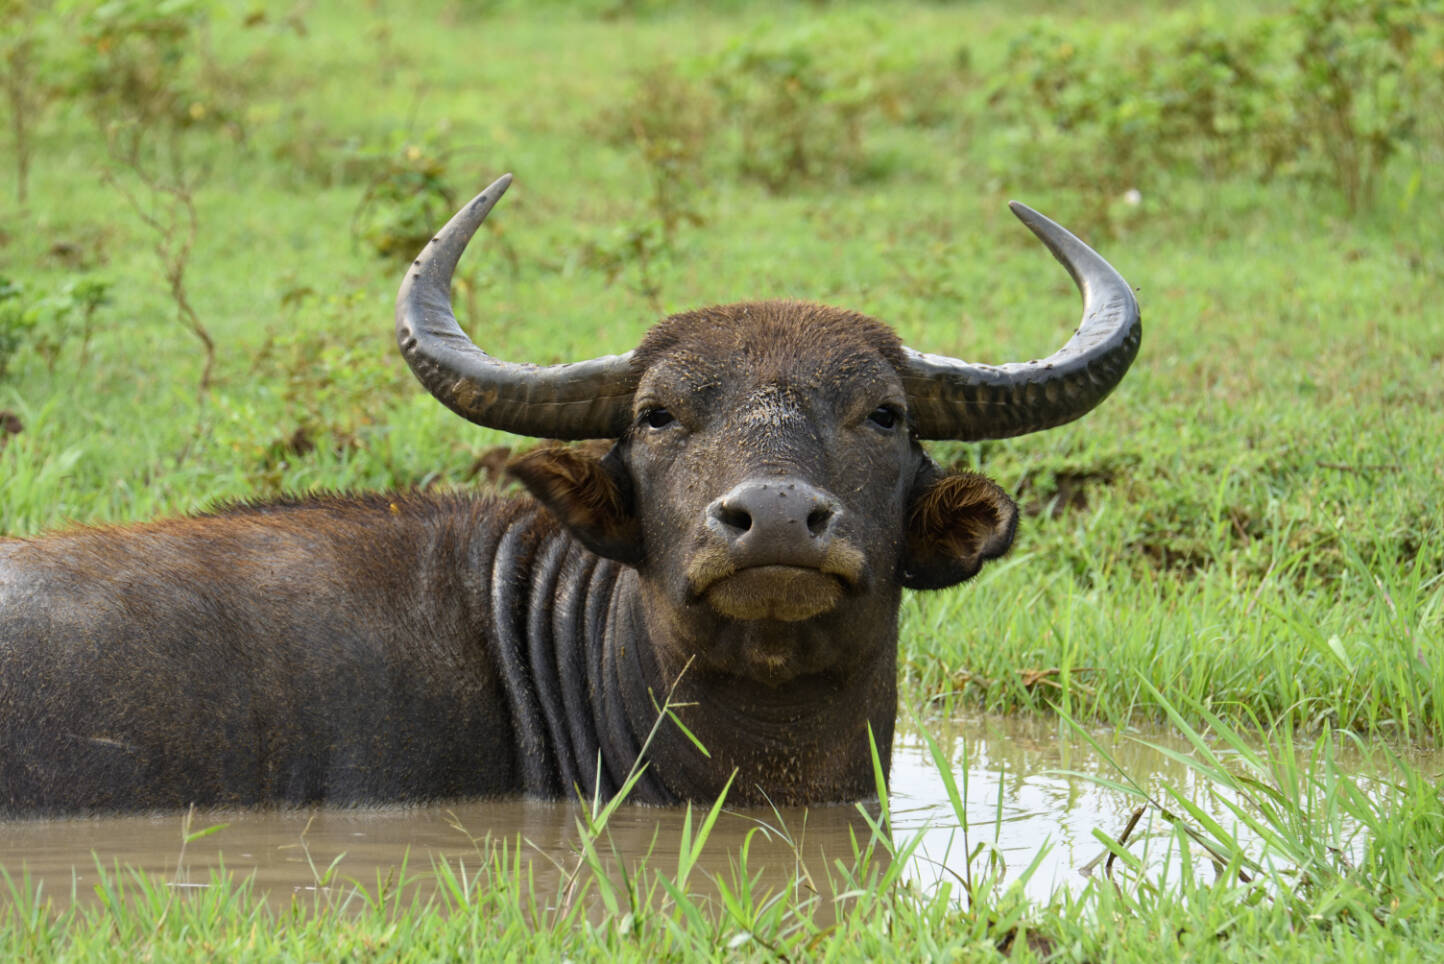 Water buffalo. ADOBE STOCK IMAGE